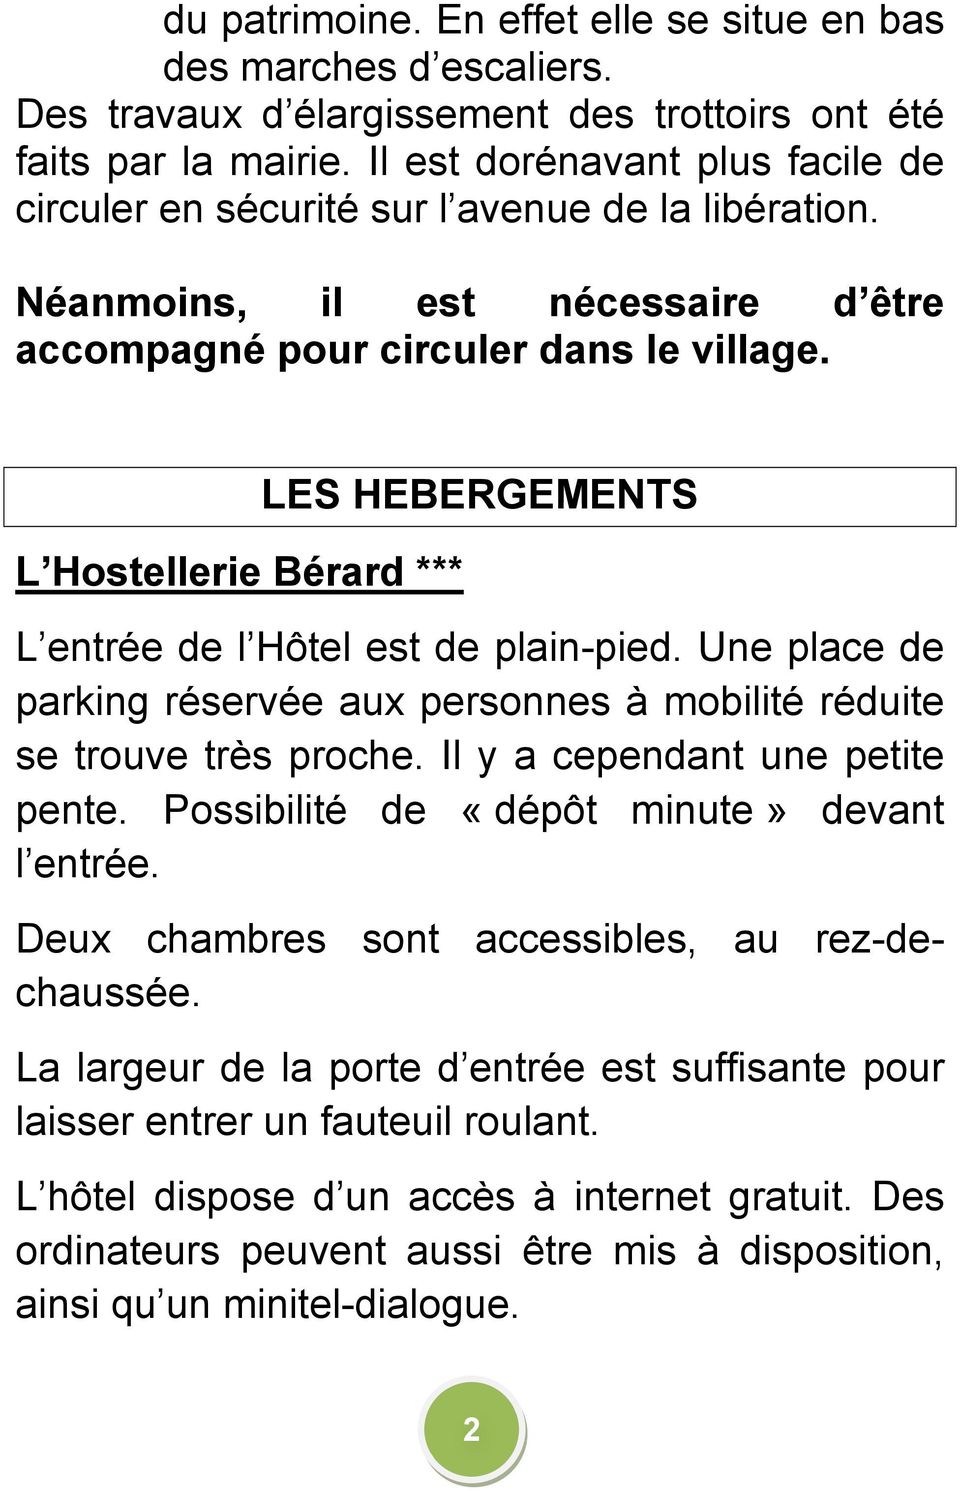 L Hostellerie Bérard *** LES HEBERGEMENTS L entrée de l Hôtel est de plain-pied. Une place de parking réservée aux personnes à mobilité réduite se trouve très proche.